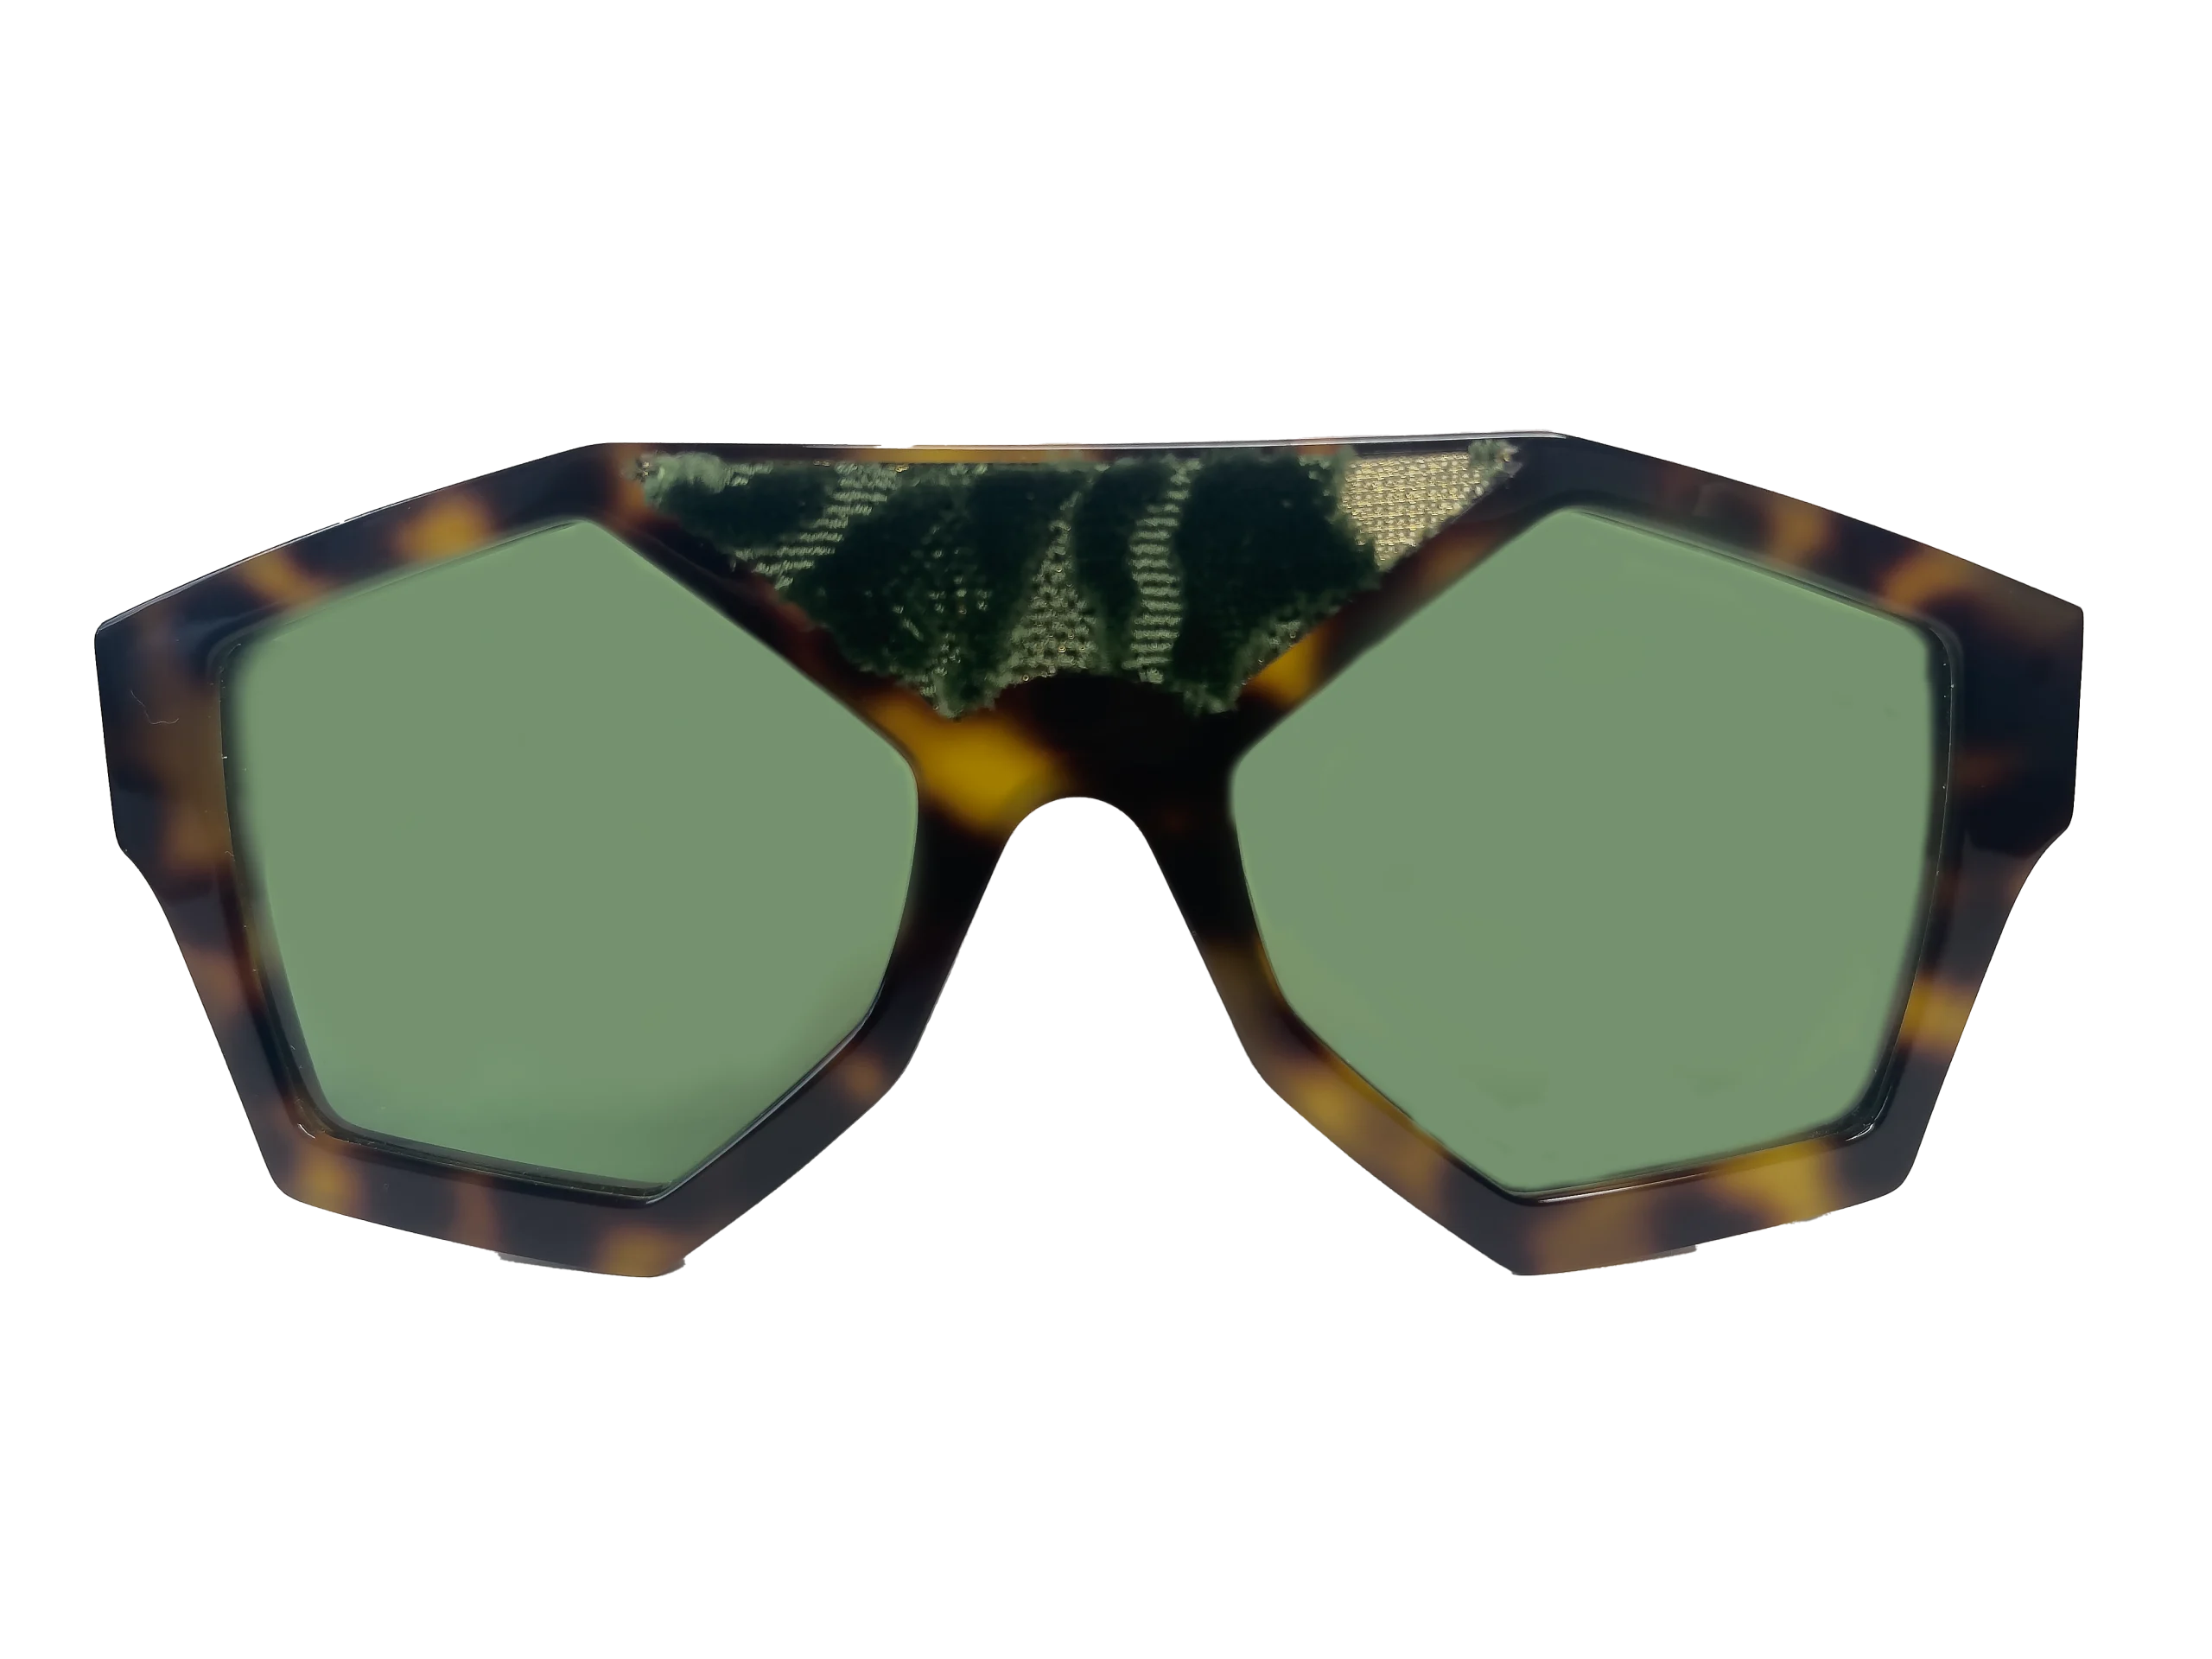 occhiali da sole marzocco seta velluto verde Clarissa OliveriO